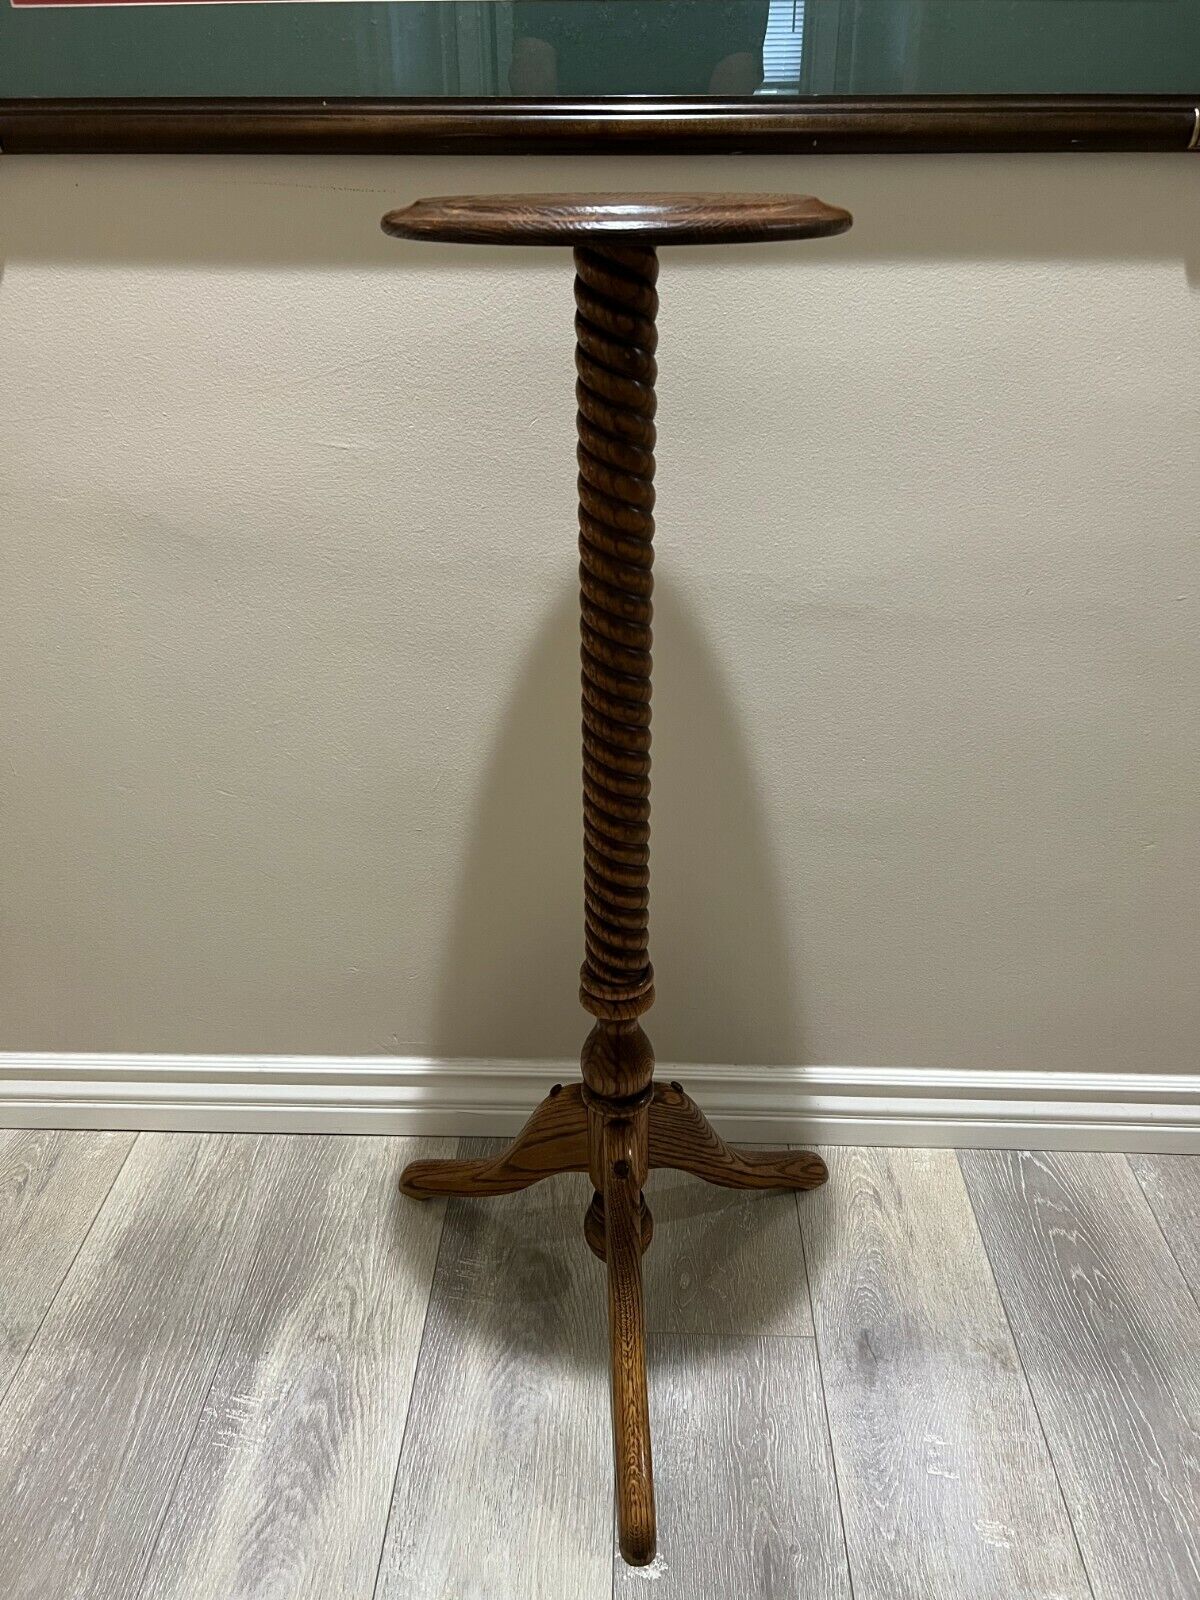 Vintage Hand Carved Oak Barley Twist Plant Display Pedestal Stand Table, 40" T